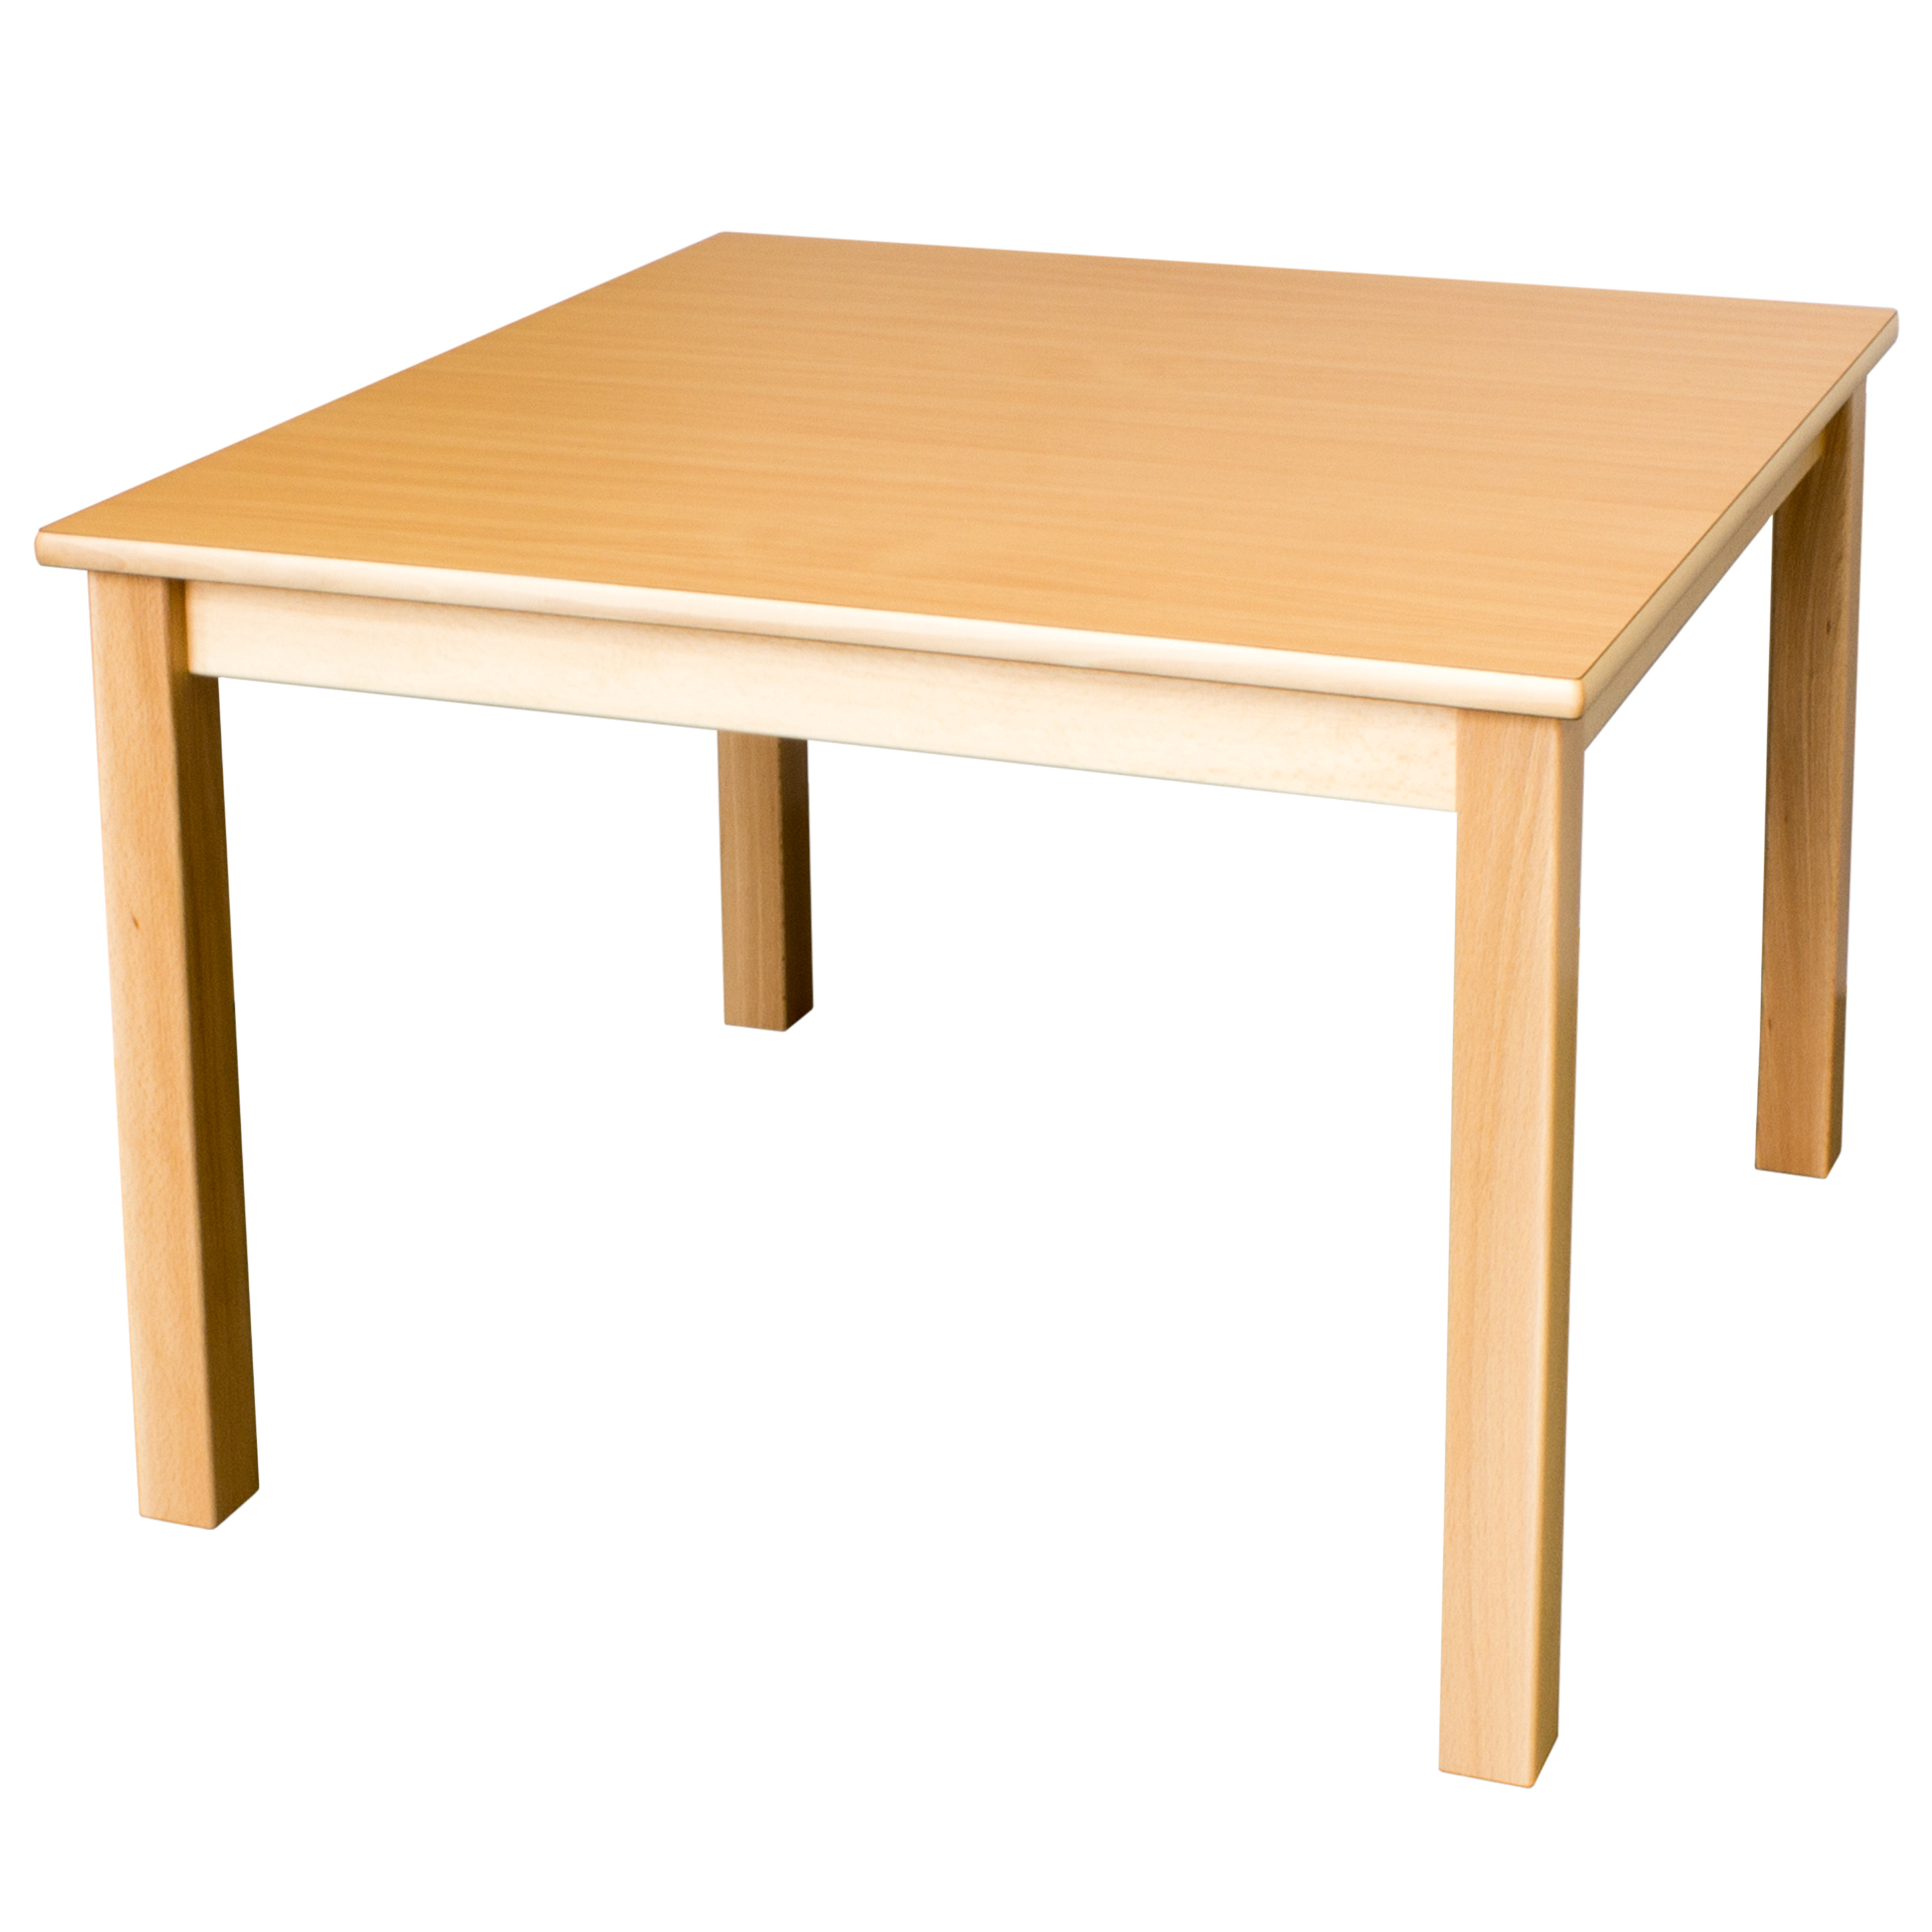 Quadrattisch in der Größe 60 x 60 cm, Tischhöhe 40 cm